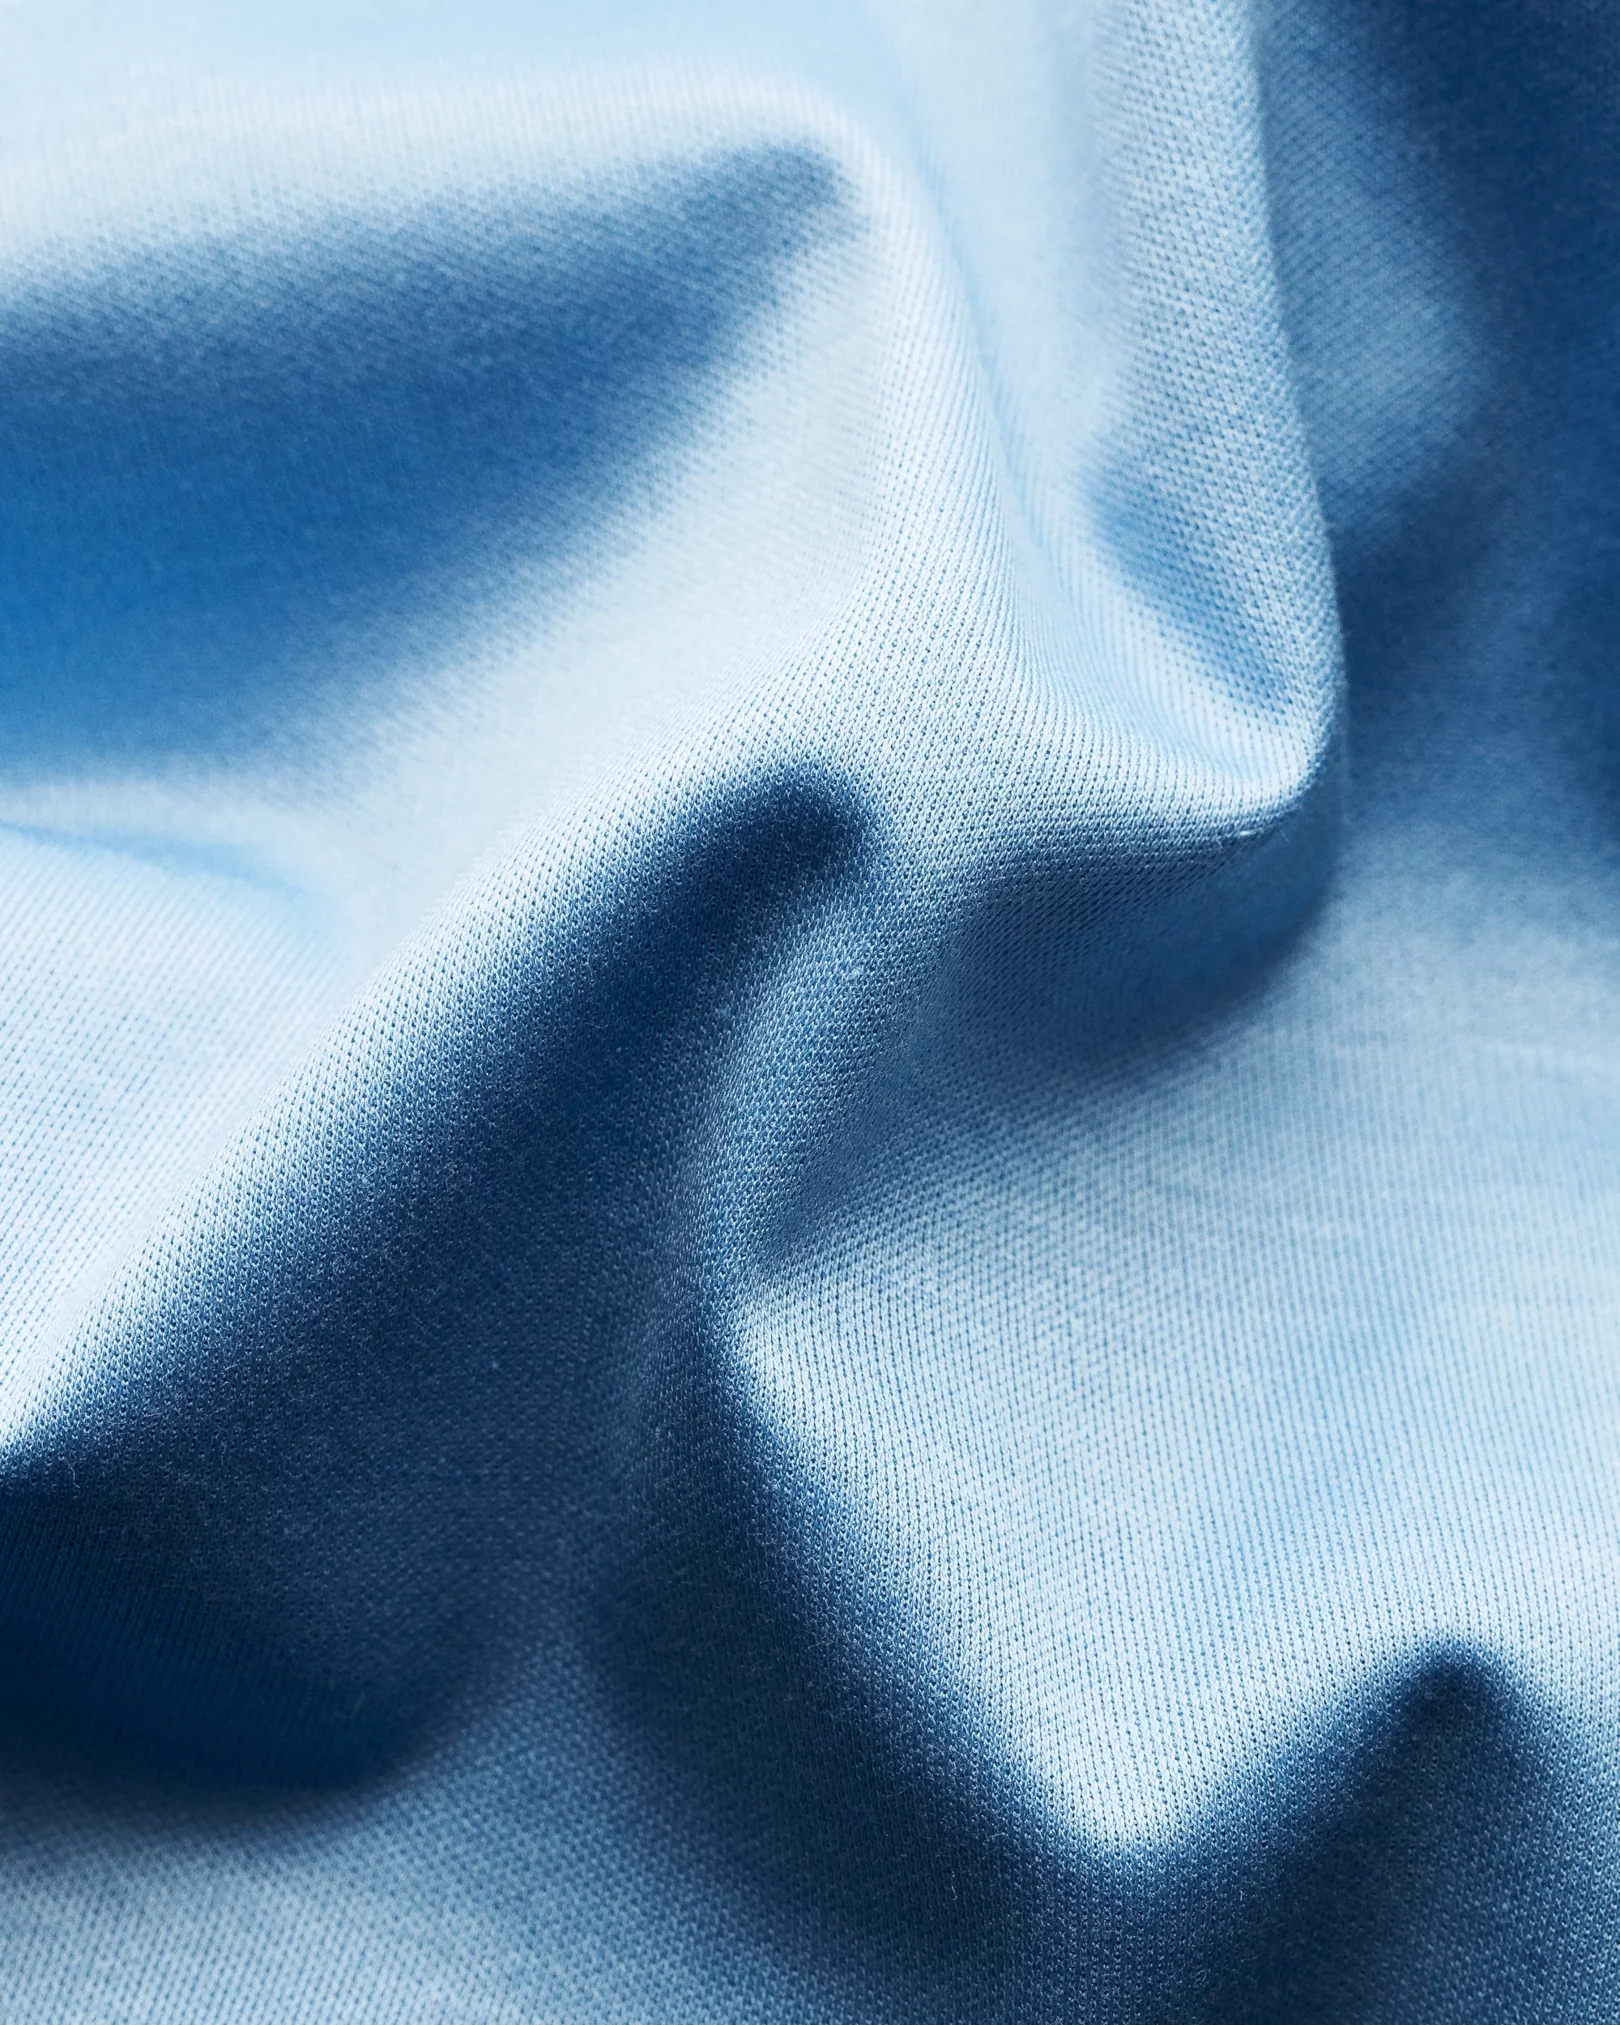 Eton - light blue jersey knitted collar no cuff jersey long sleeve regular fit jersey